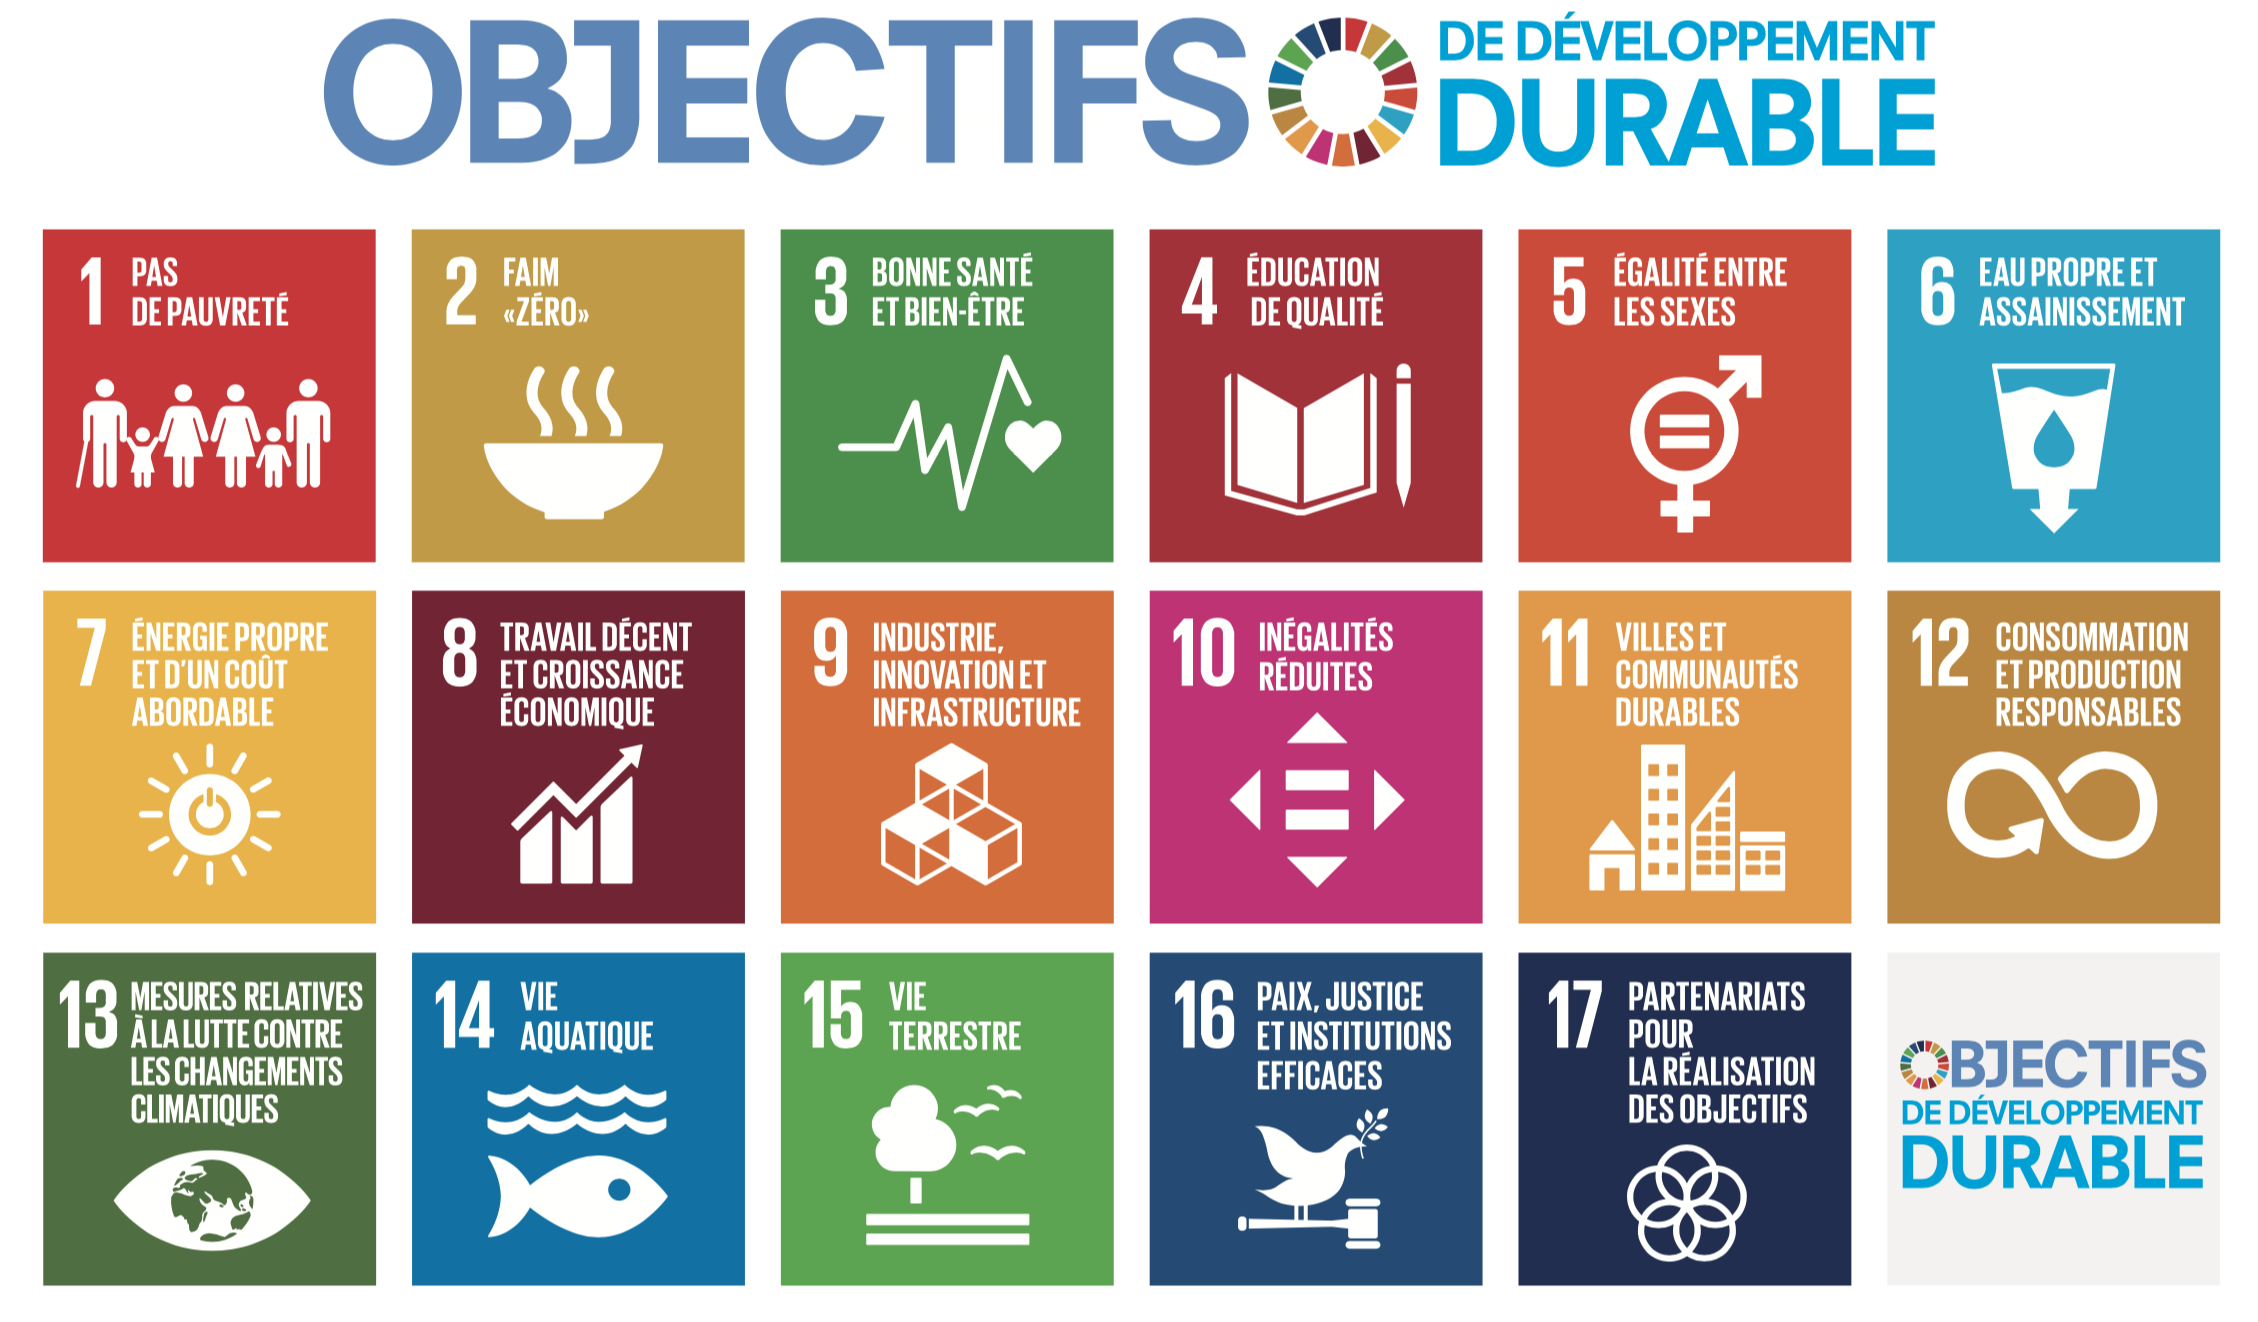 Objectifs de développement durable de l'agenda 2030